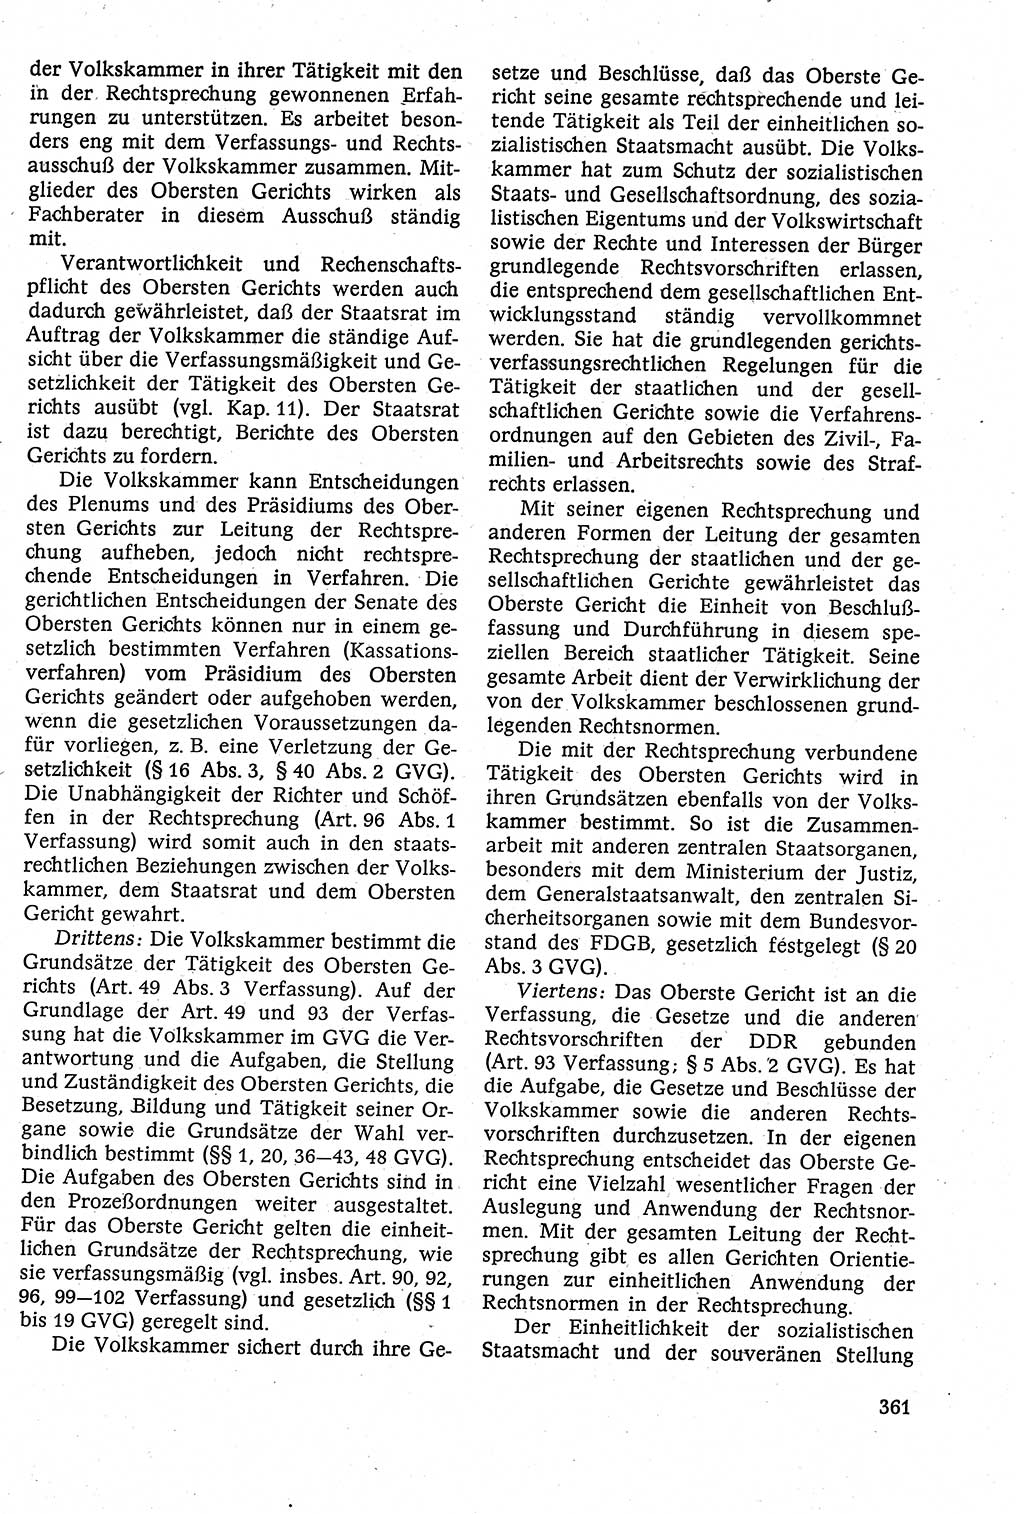 Staatsrecht der DDR [Deutsche Demokratische Republik (DDR)], Lehrbuch 1984, Seite 361 (St.-R. DDR Lb. 1984, S. 361)